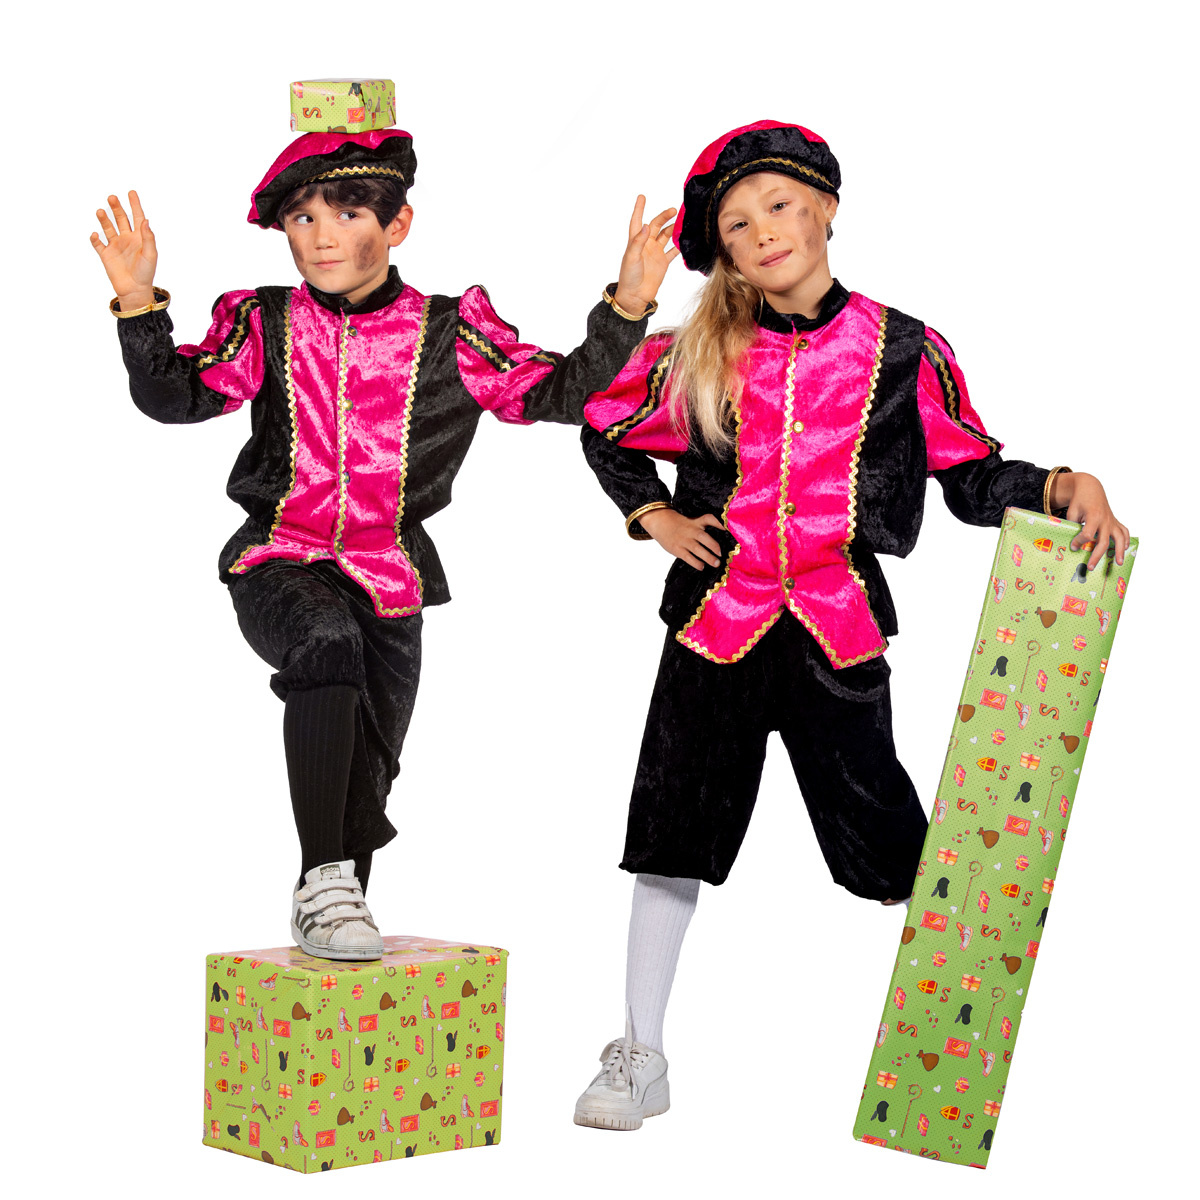 Wilbers & Wilbers - Pietenpakken - Vrolijk Pietje Roze Pietenpak Kind Kostuum - Roze - Maat 104 - Sinterklaas - Verkleedkleding